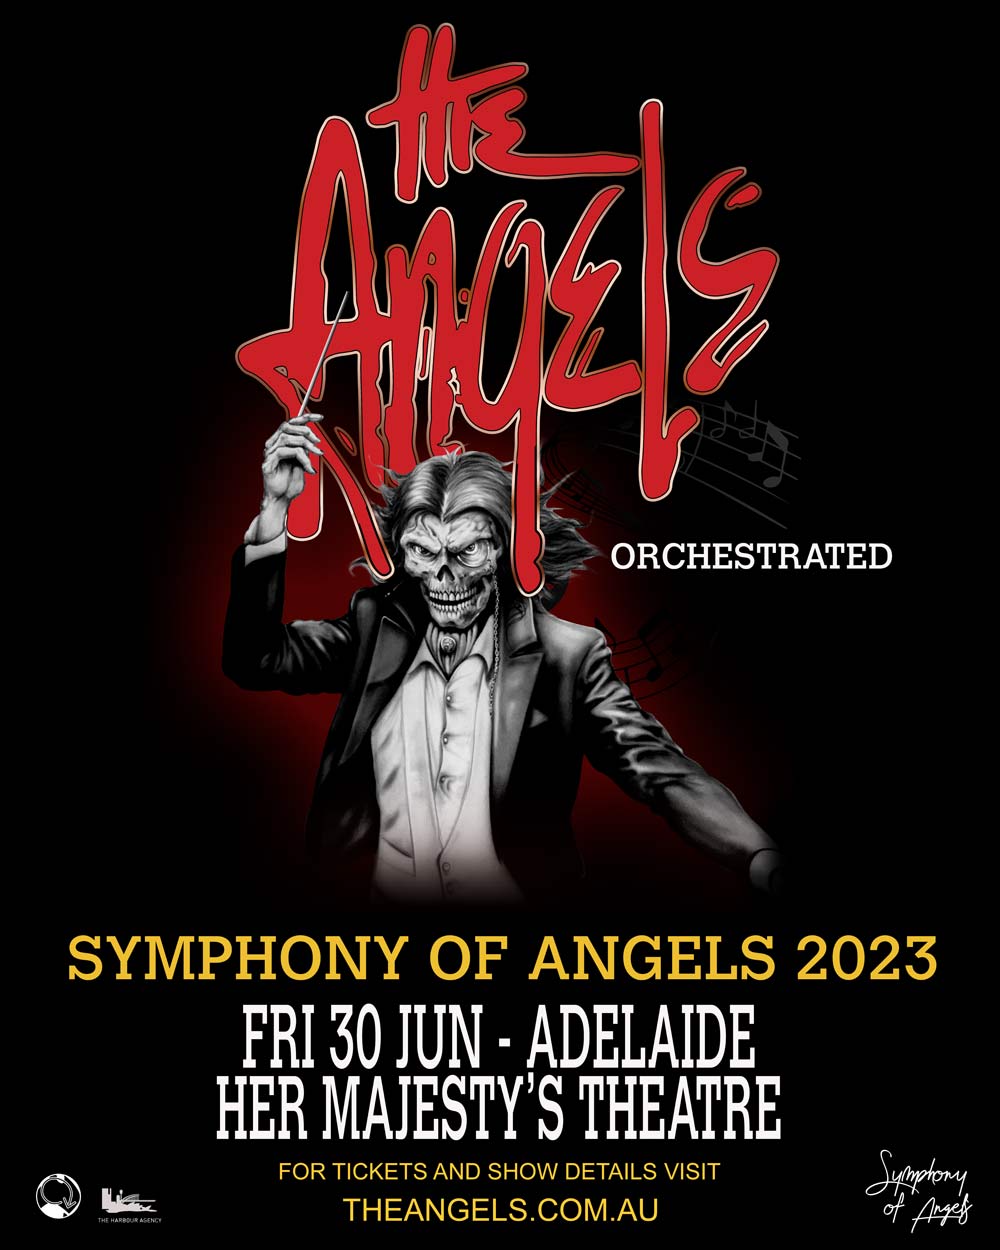 Angels Ticket Information